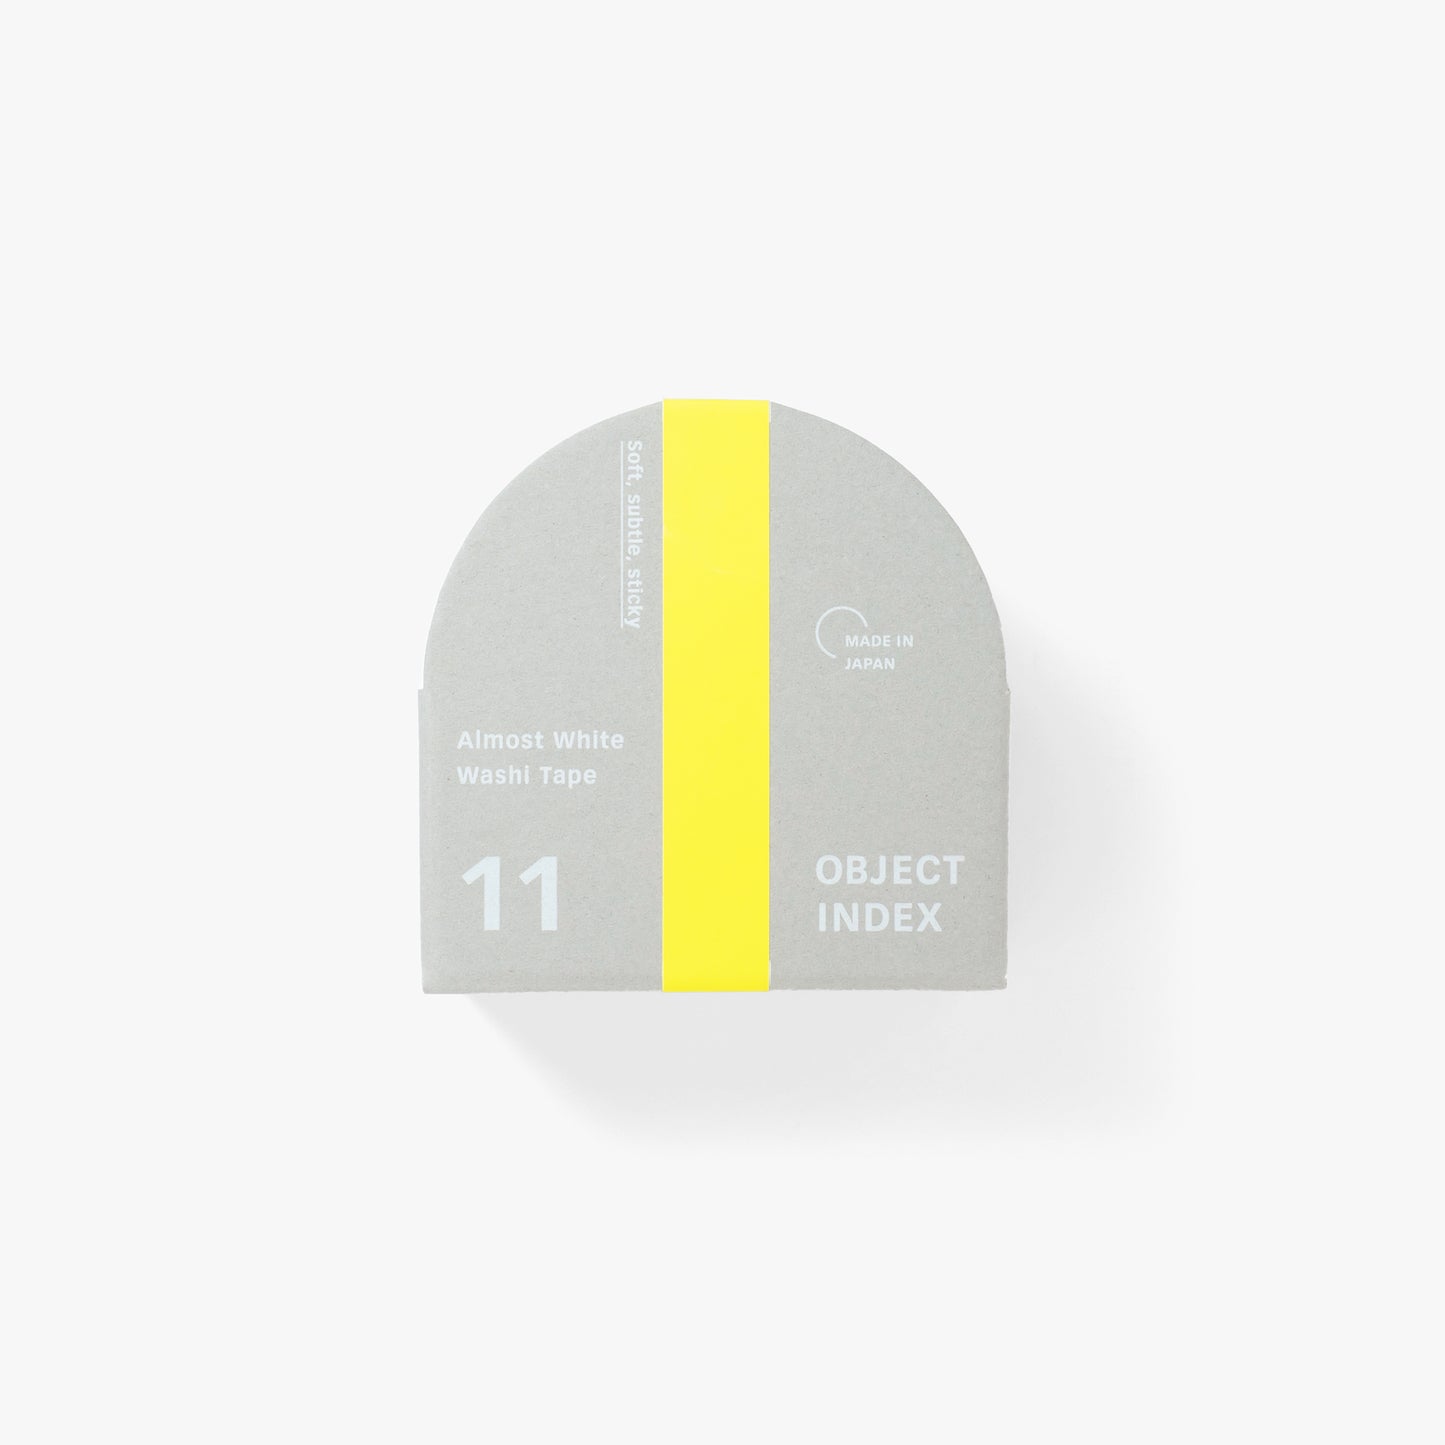 Almost White Washi Tape - Large - Set of Three Kakimori Object Index pack